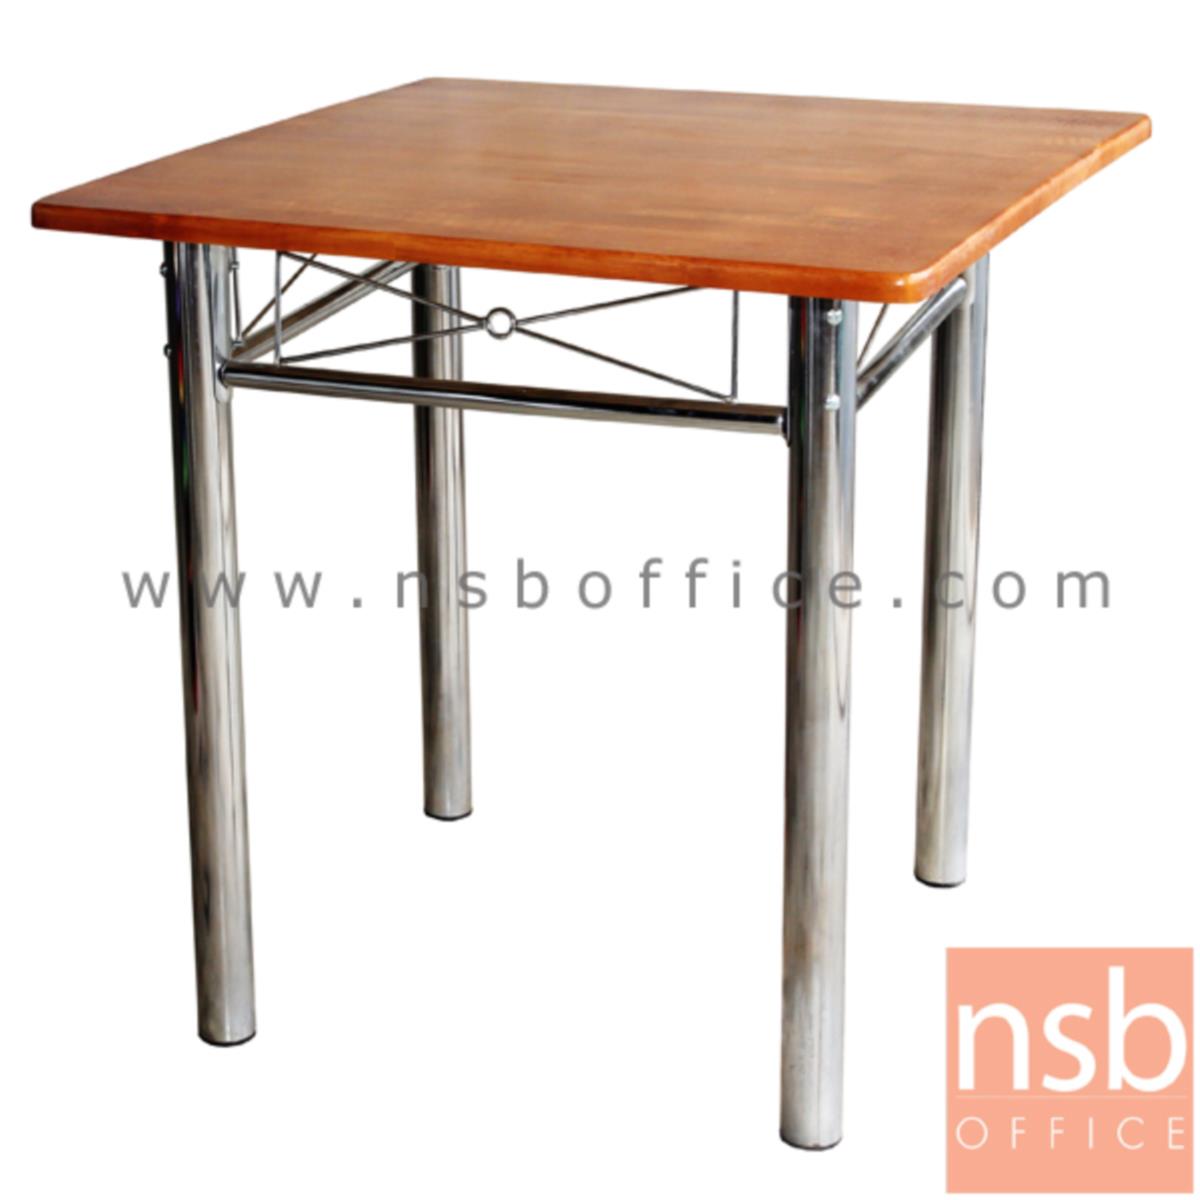 โต๊ะหน้าไม้ยางพารา 4 ที่นั่ง รุ่น Margat (มาร์กัต) ขนาด 60W ,75W cm. ขาเหล็ก 